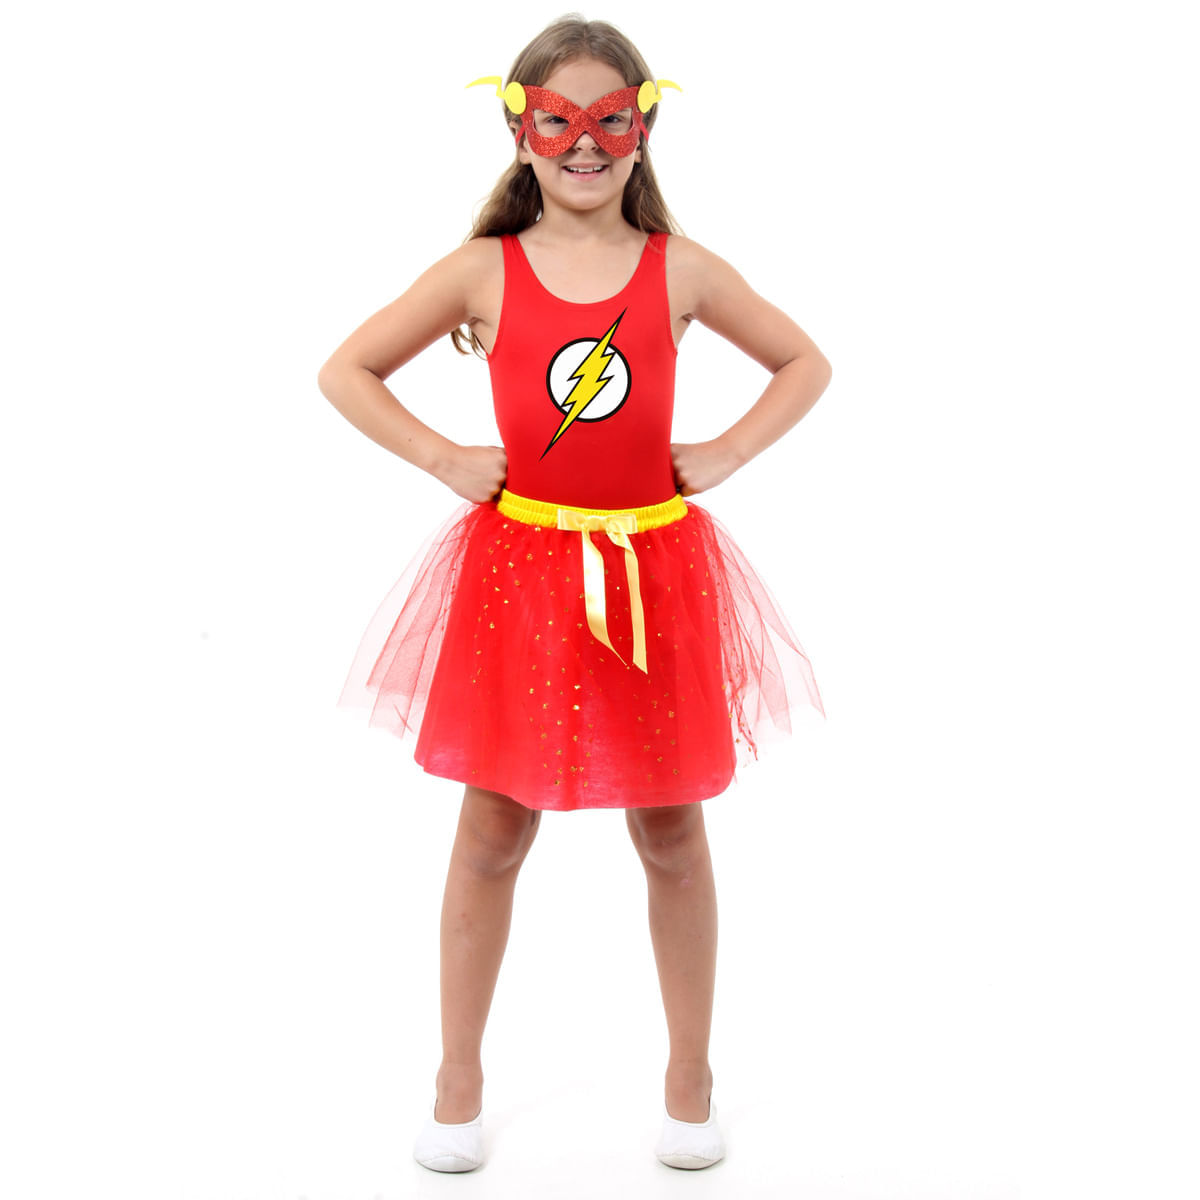 Fantasia Infantil Flash Infantil - Dress Up P / UNICA